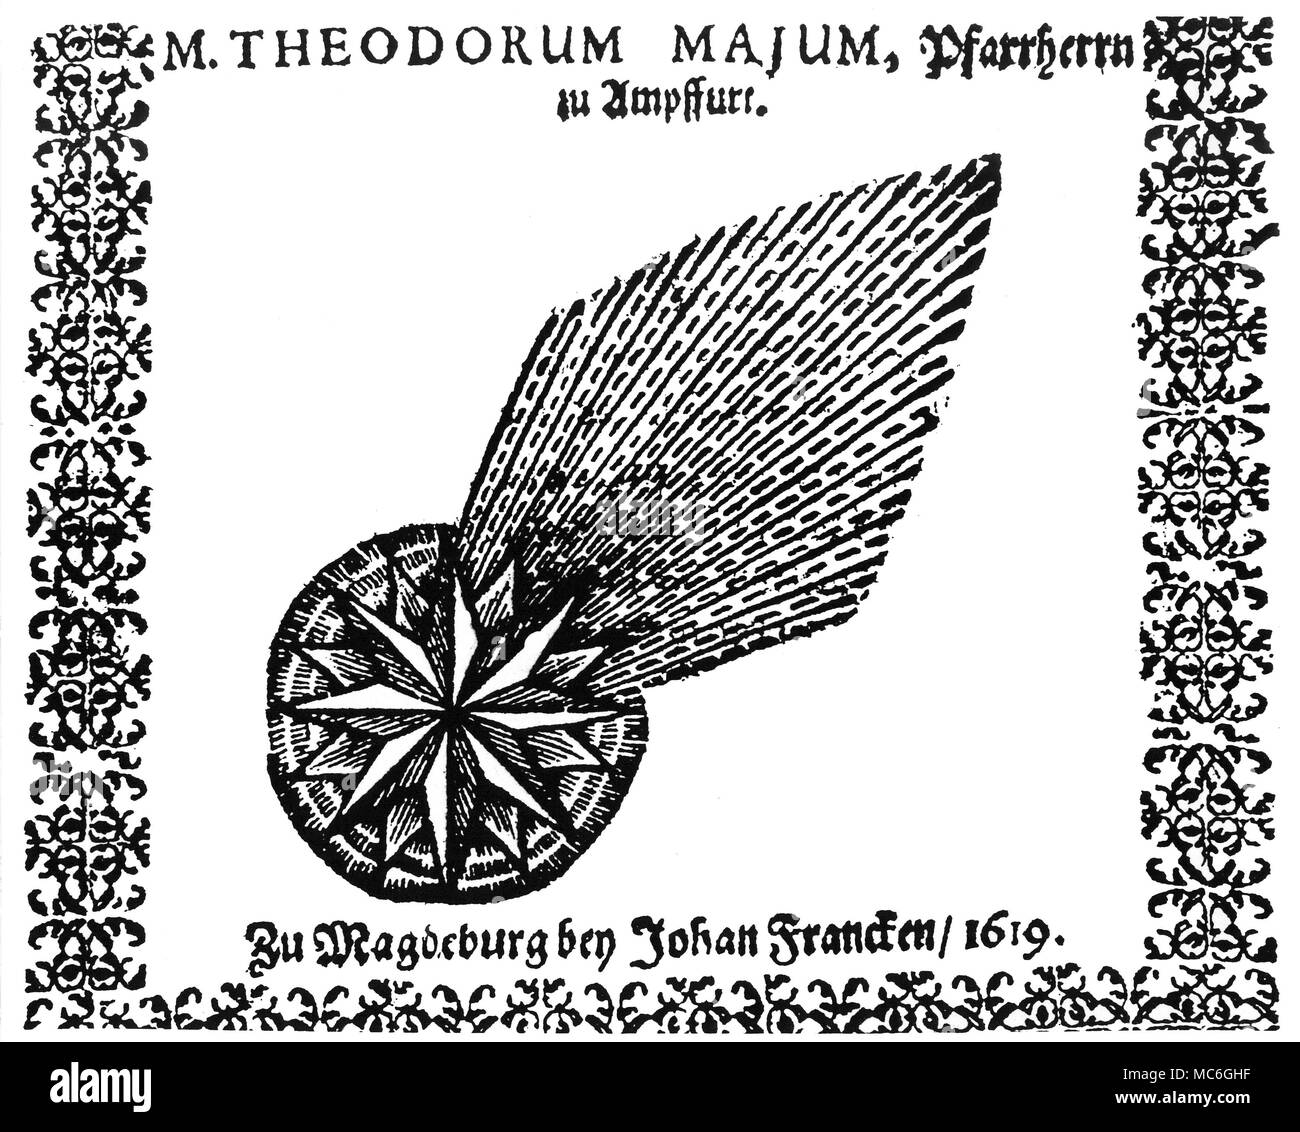 Astrologie - Kometen der Komet von 1619, von der Titelseite von Theodore Major, Soder ewige Bott [Bote?], in Magdeburg im Jahre 1619 gedruckt. Stockfoto